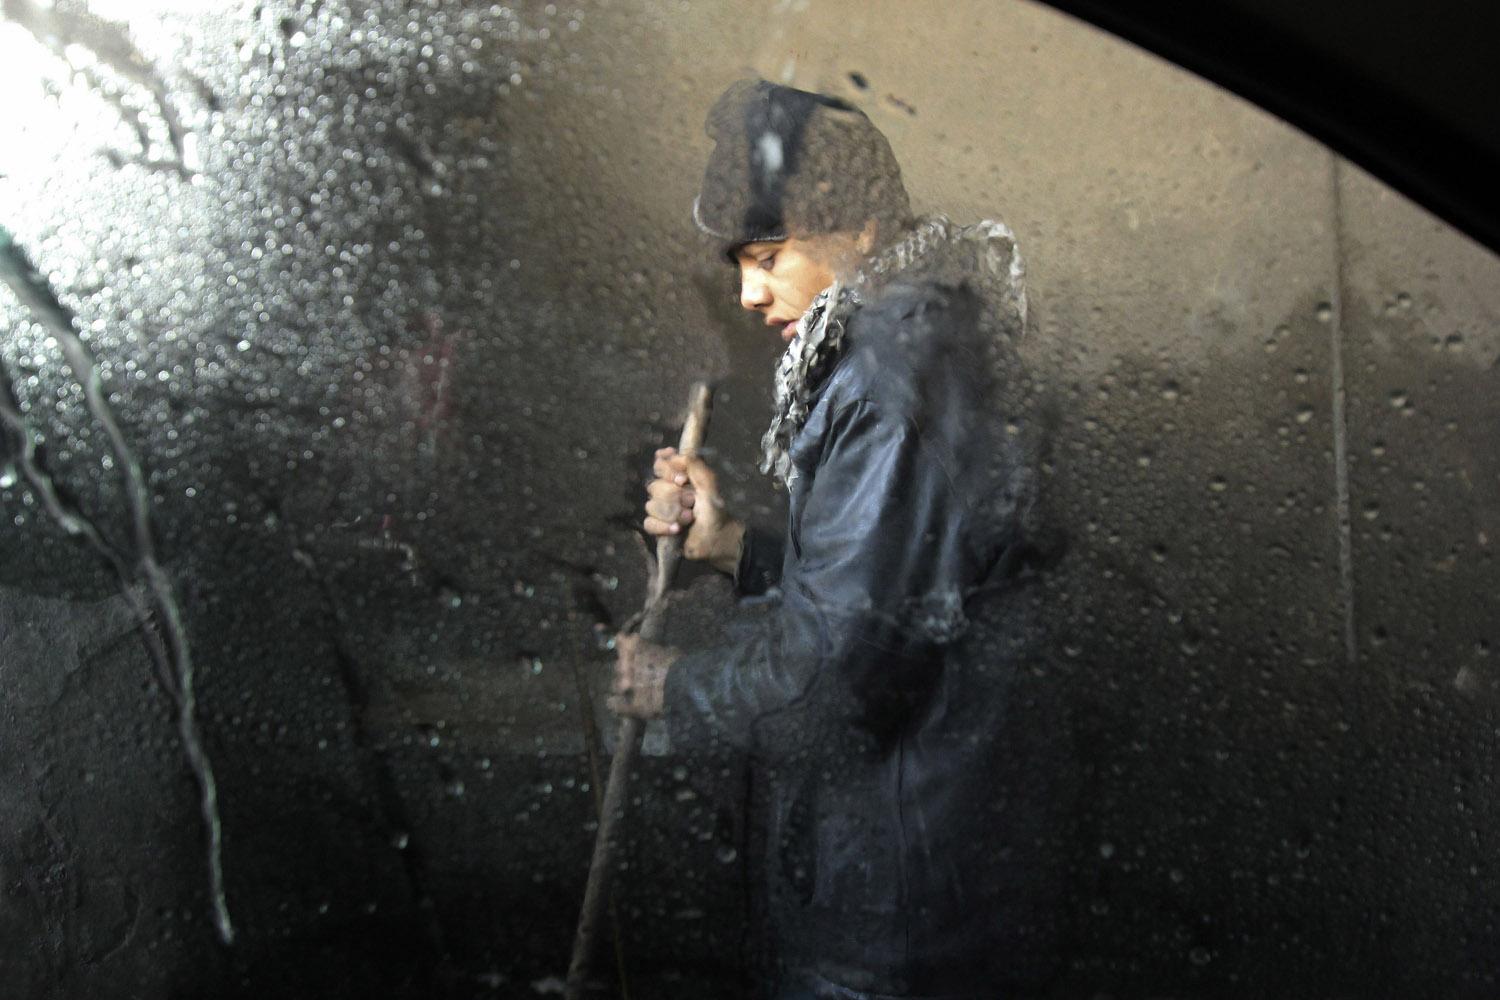 Feb. 27, 2013. A boy works at a car wash in Aleppo, Syria.